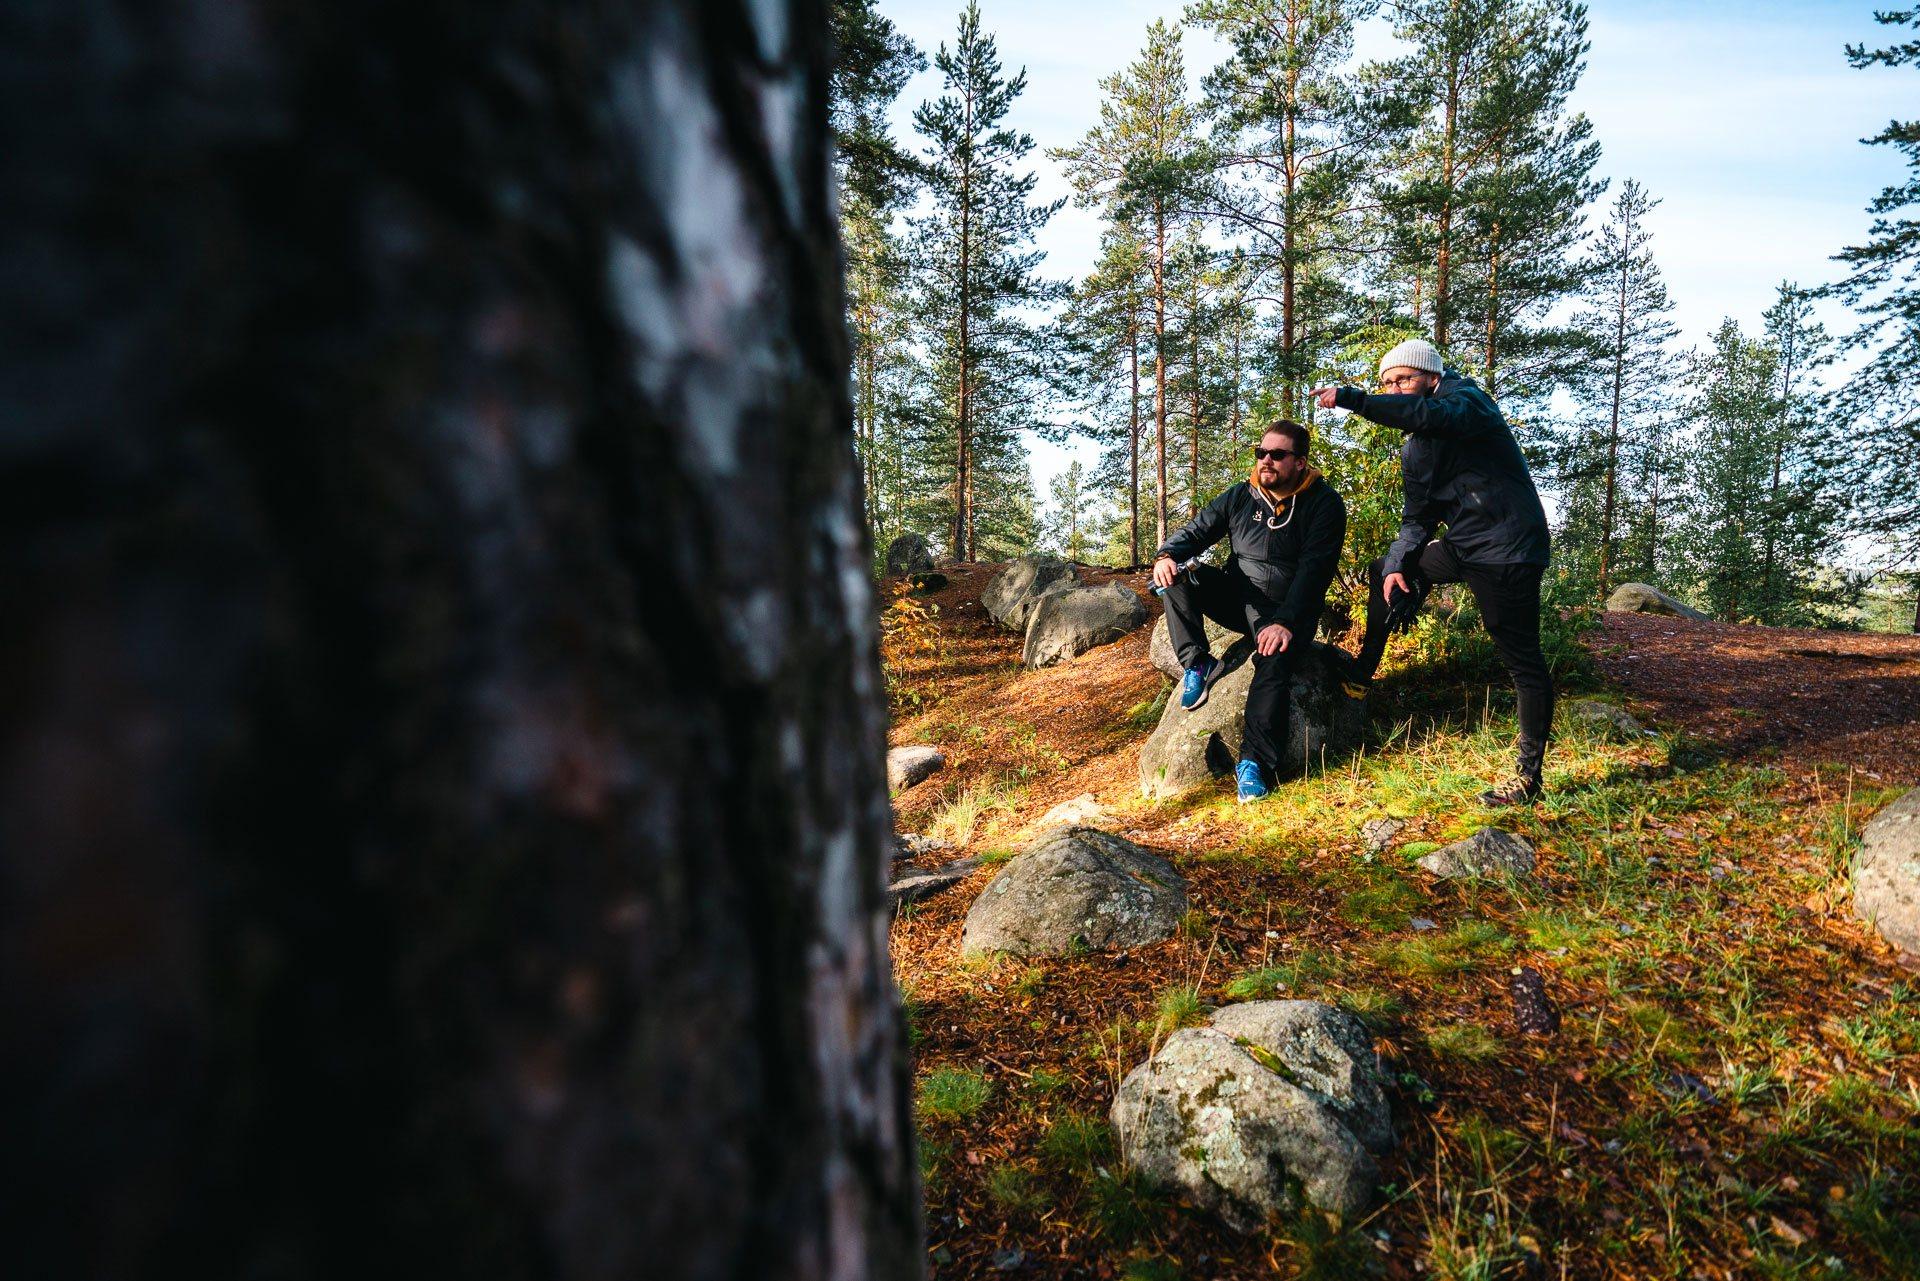 Kuvassa on kaksi miestä, joista toinen istuu kivellä ja toinen seisoo hänen vieressään ja osoittaa kädellä eteensä. Taustalla on metsää.